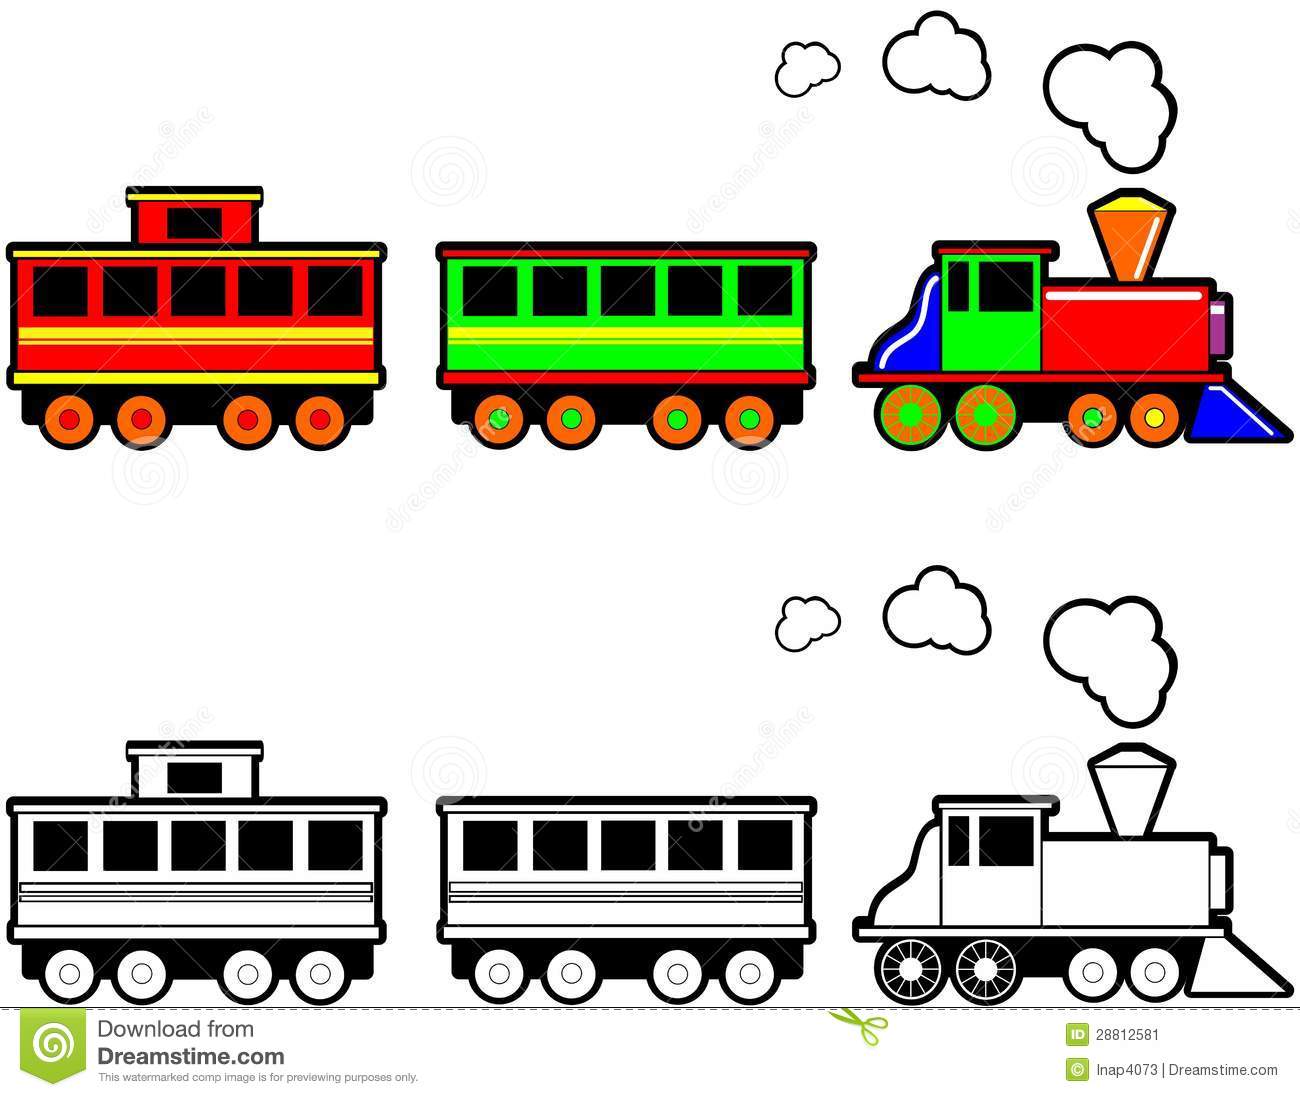 Toy Train Stock Image   Image  28812581